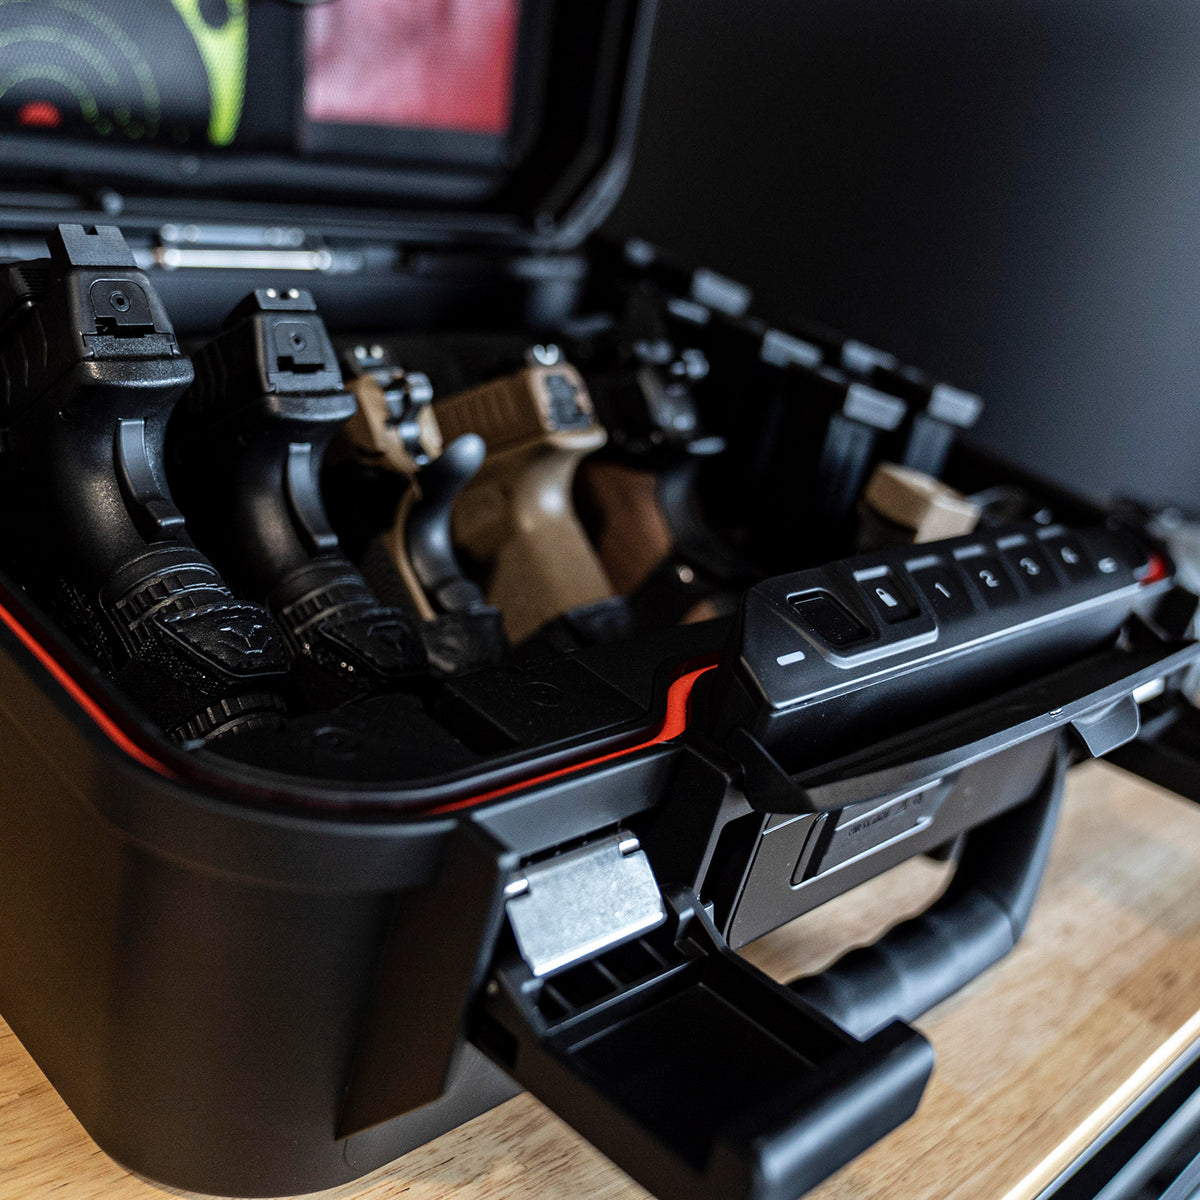 Vaultek Lifepod XT2i High Capacity Weather Resistant Firearm Case Enthusiast Model Open 2